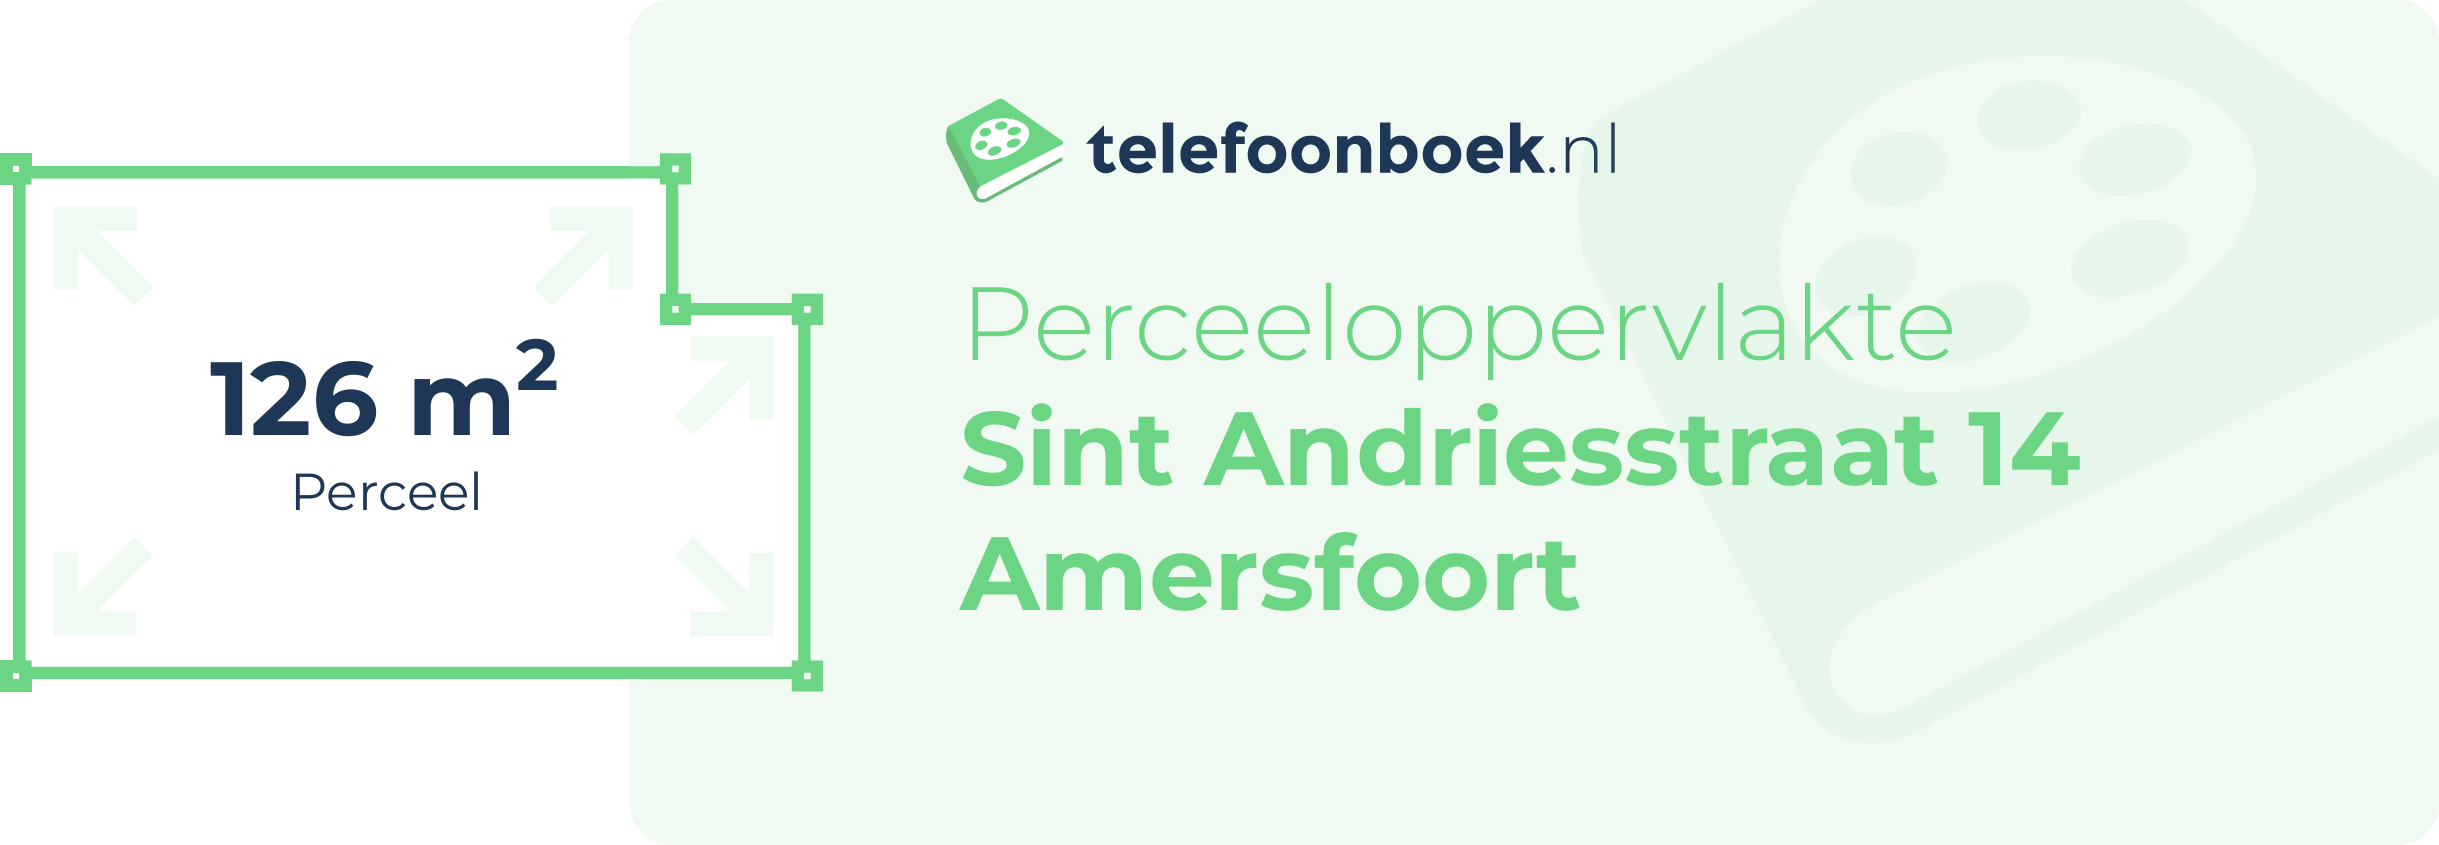 Perceeloppervlakte Sint Andriesstraat 14 Amersfoort